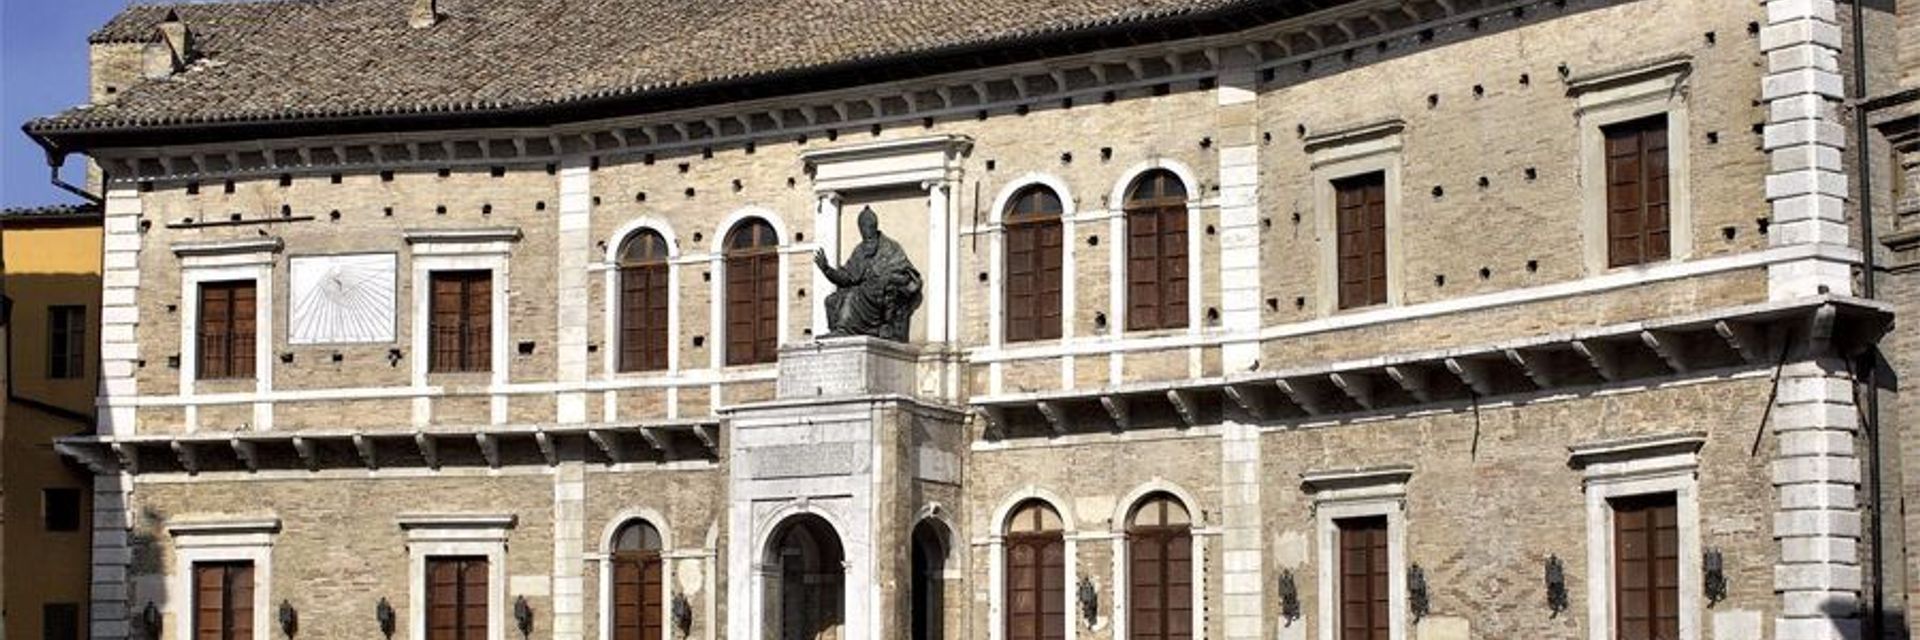 Palazzo dei Priori museum complex